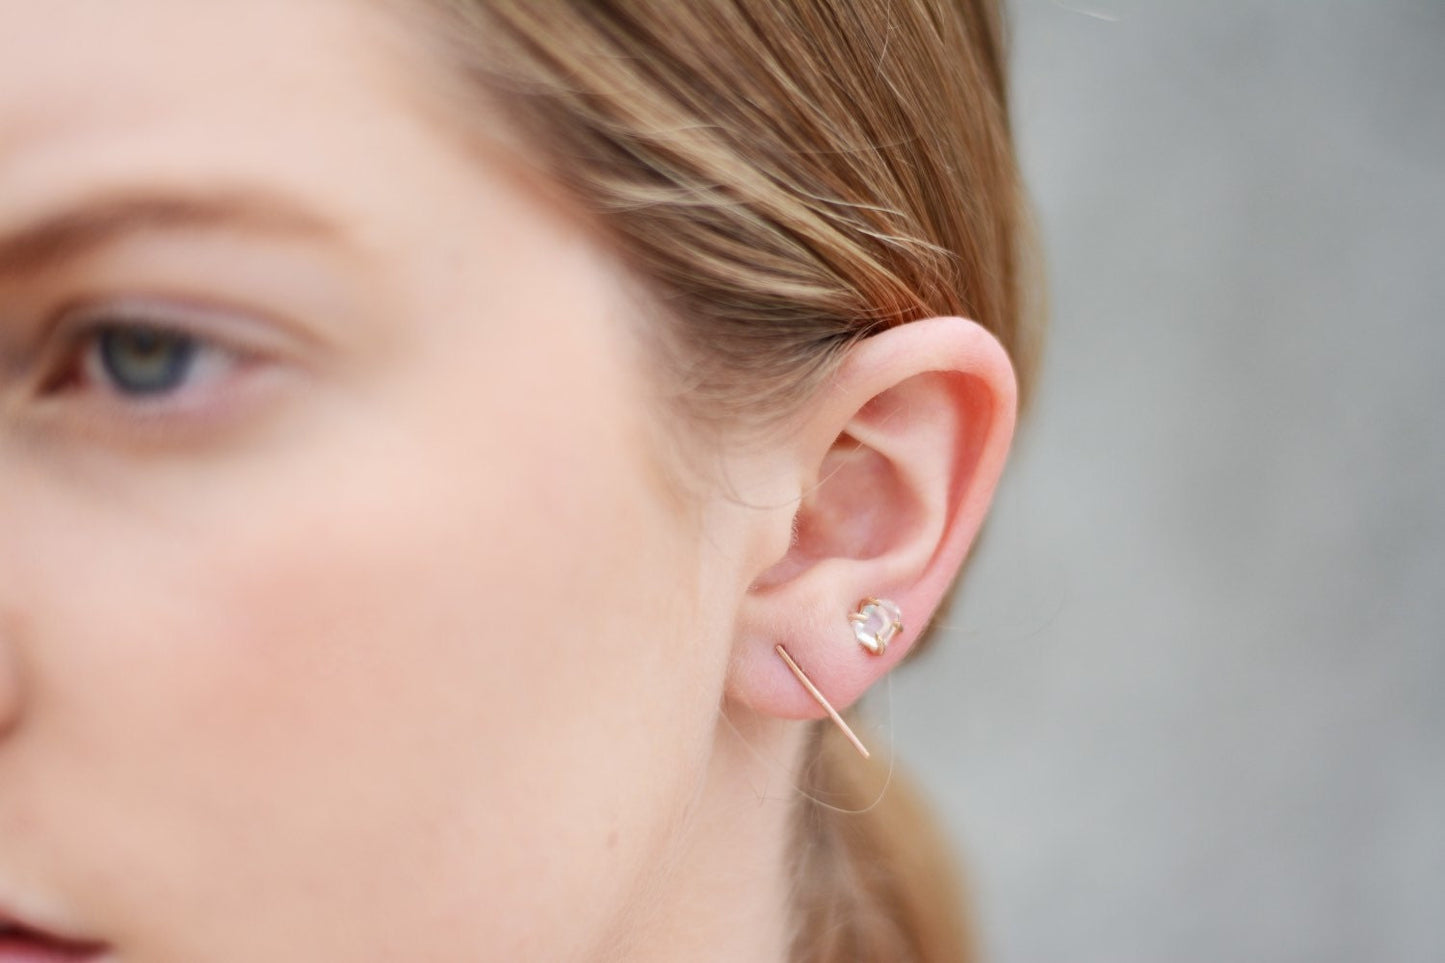 Herkimier stud earrings